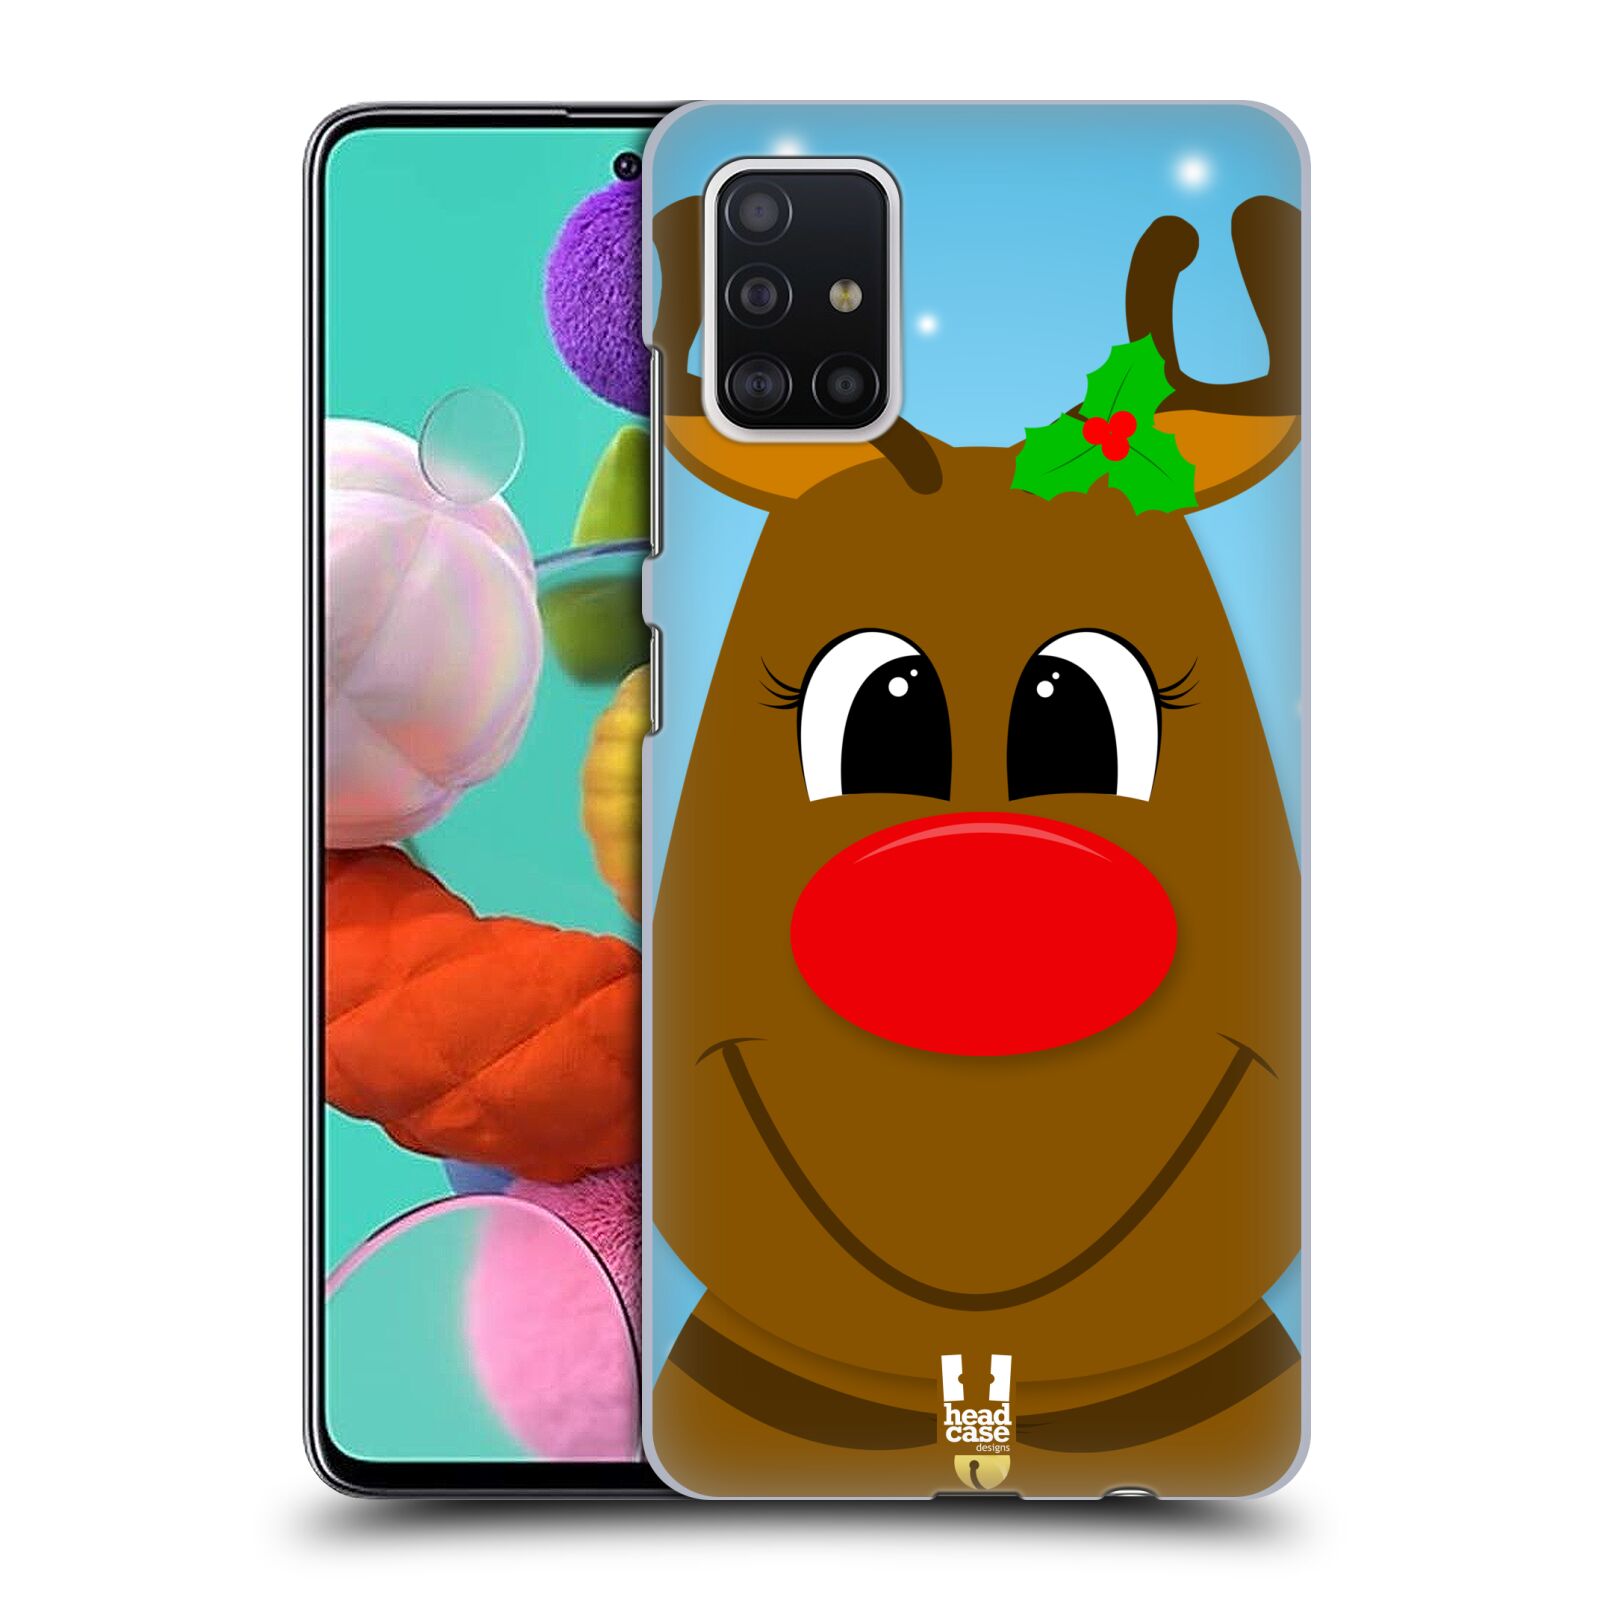 Pouzdro na mobil Samsung Galaxy A51 - HEAD CASE - vzor Vánoční tváře kreslené SOB RUDOLF